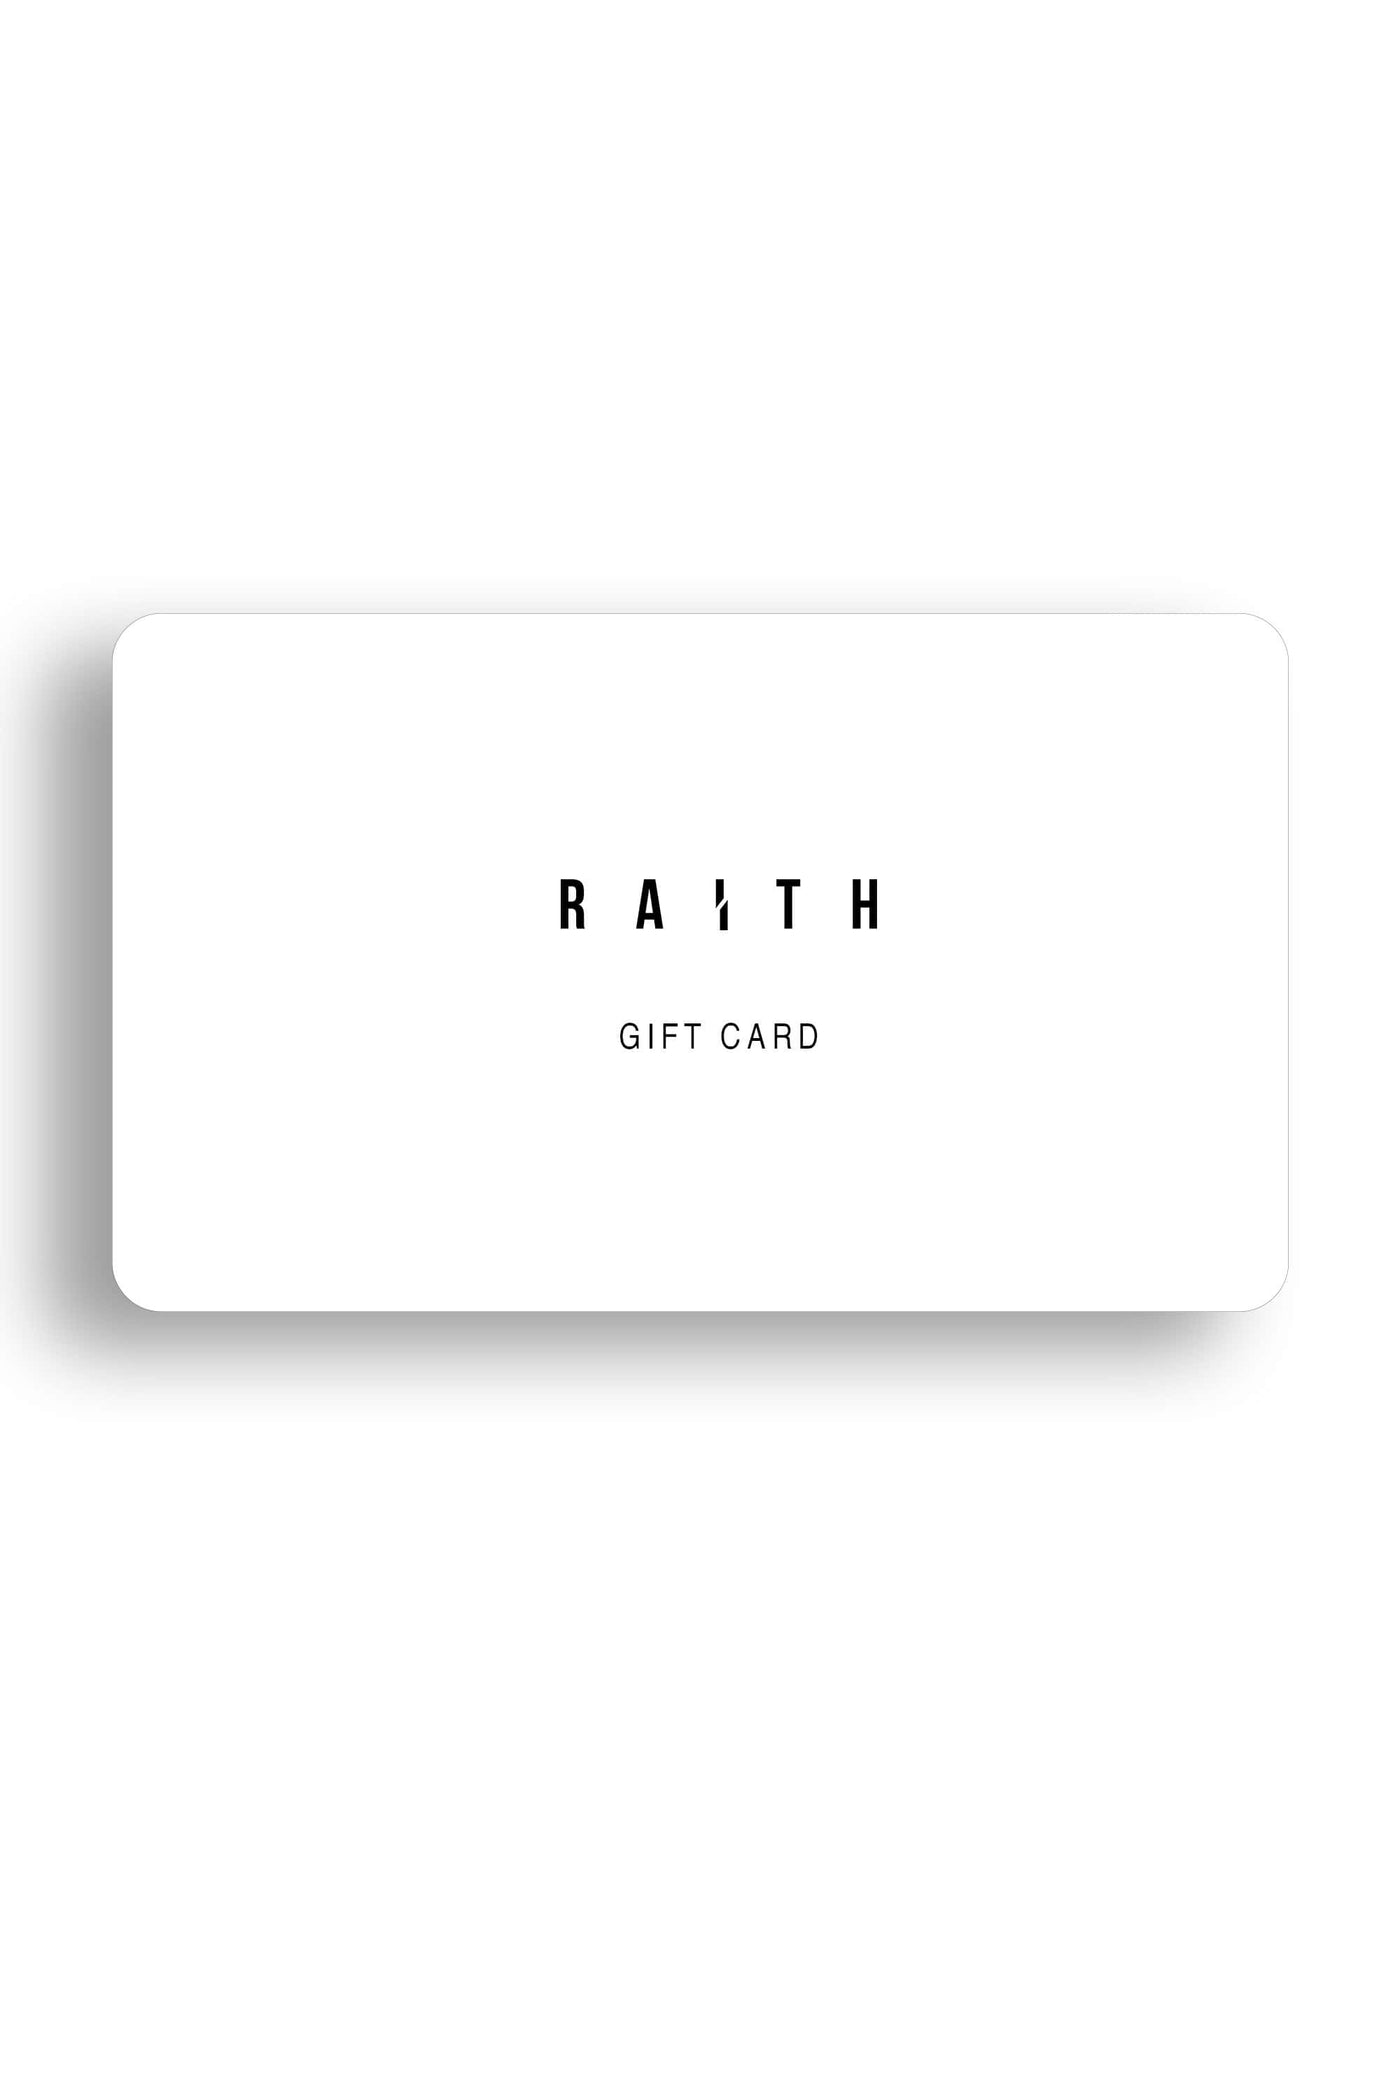 RAITH GIFT CARD